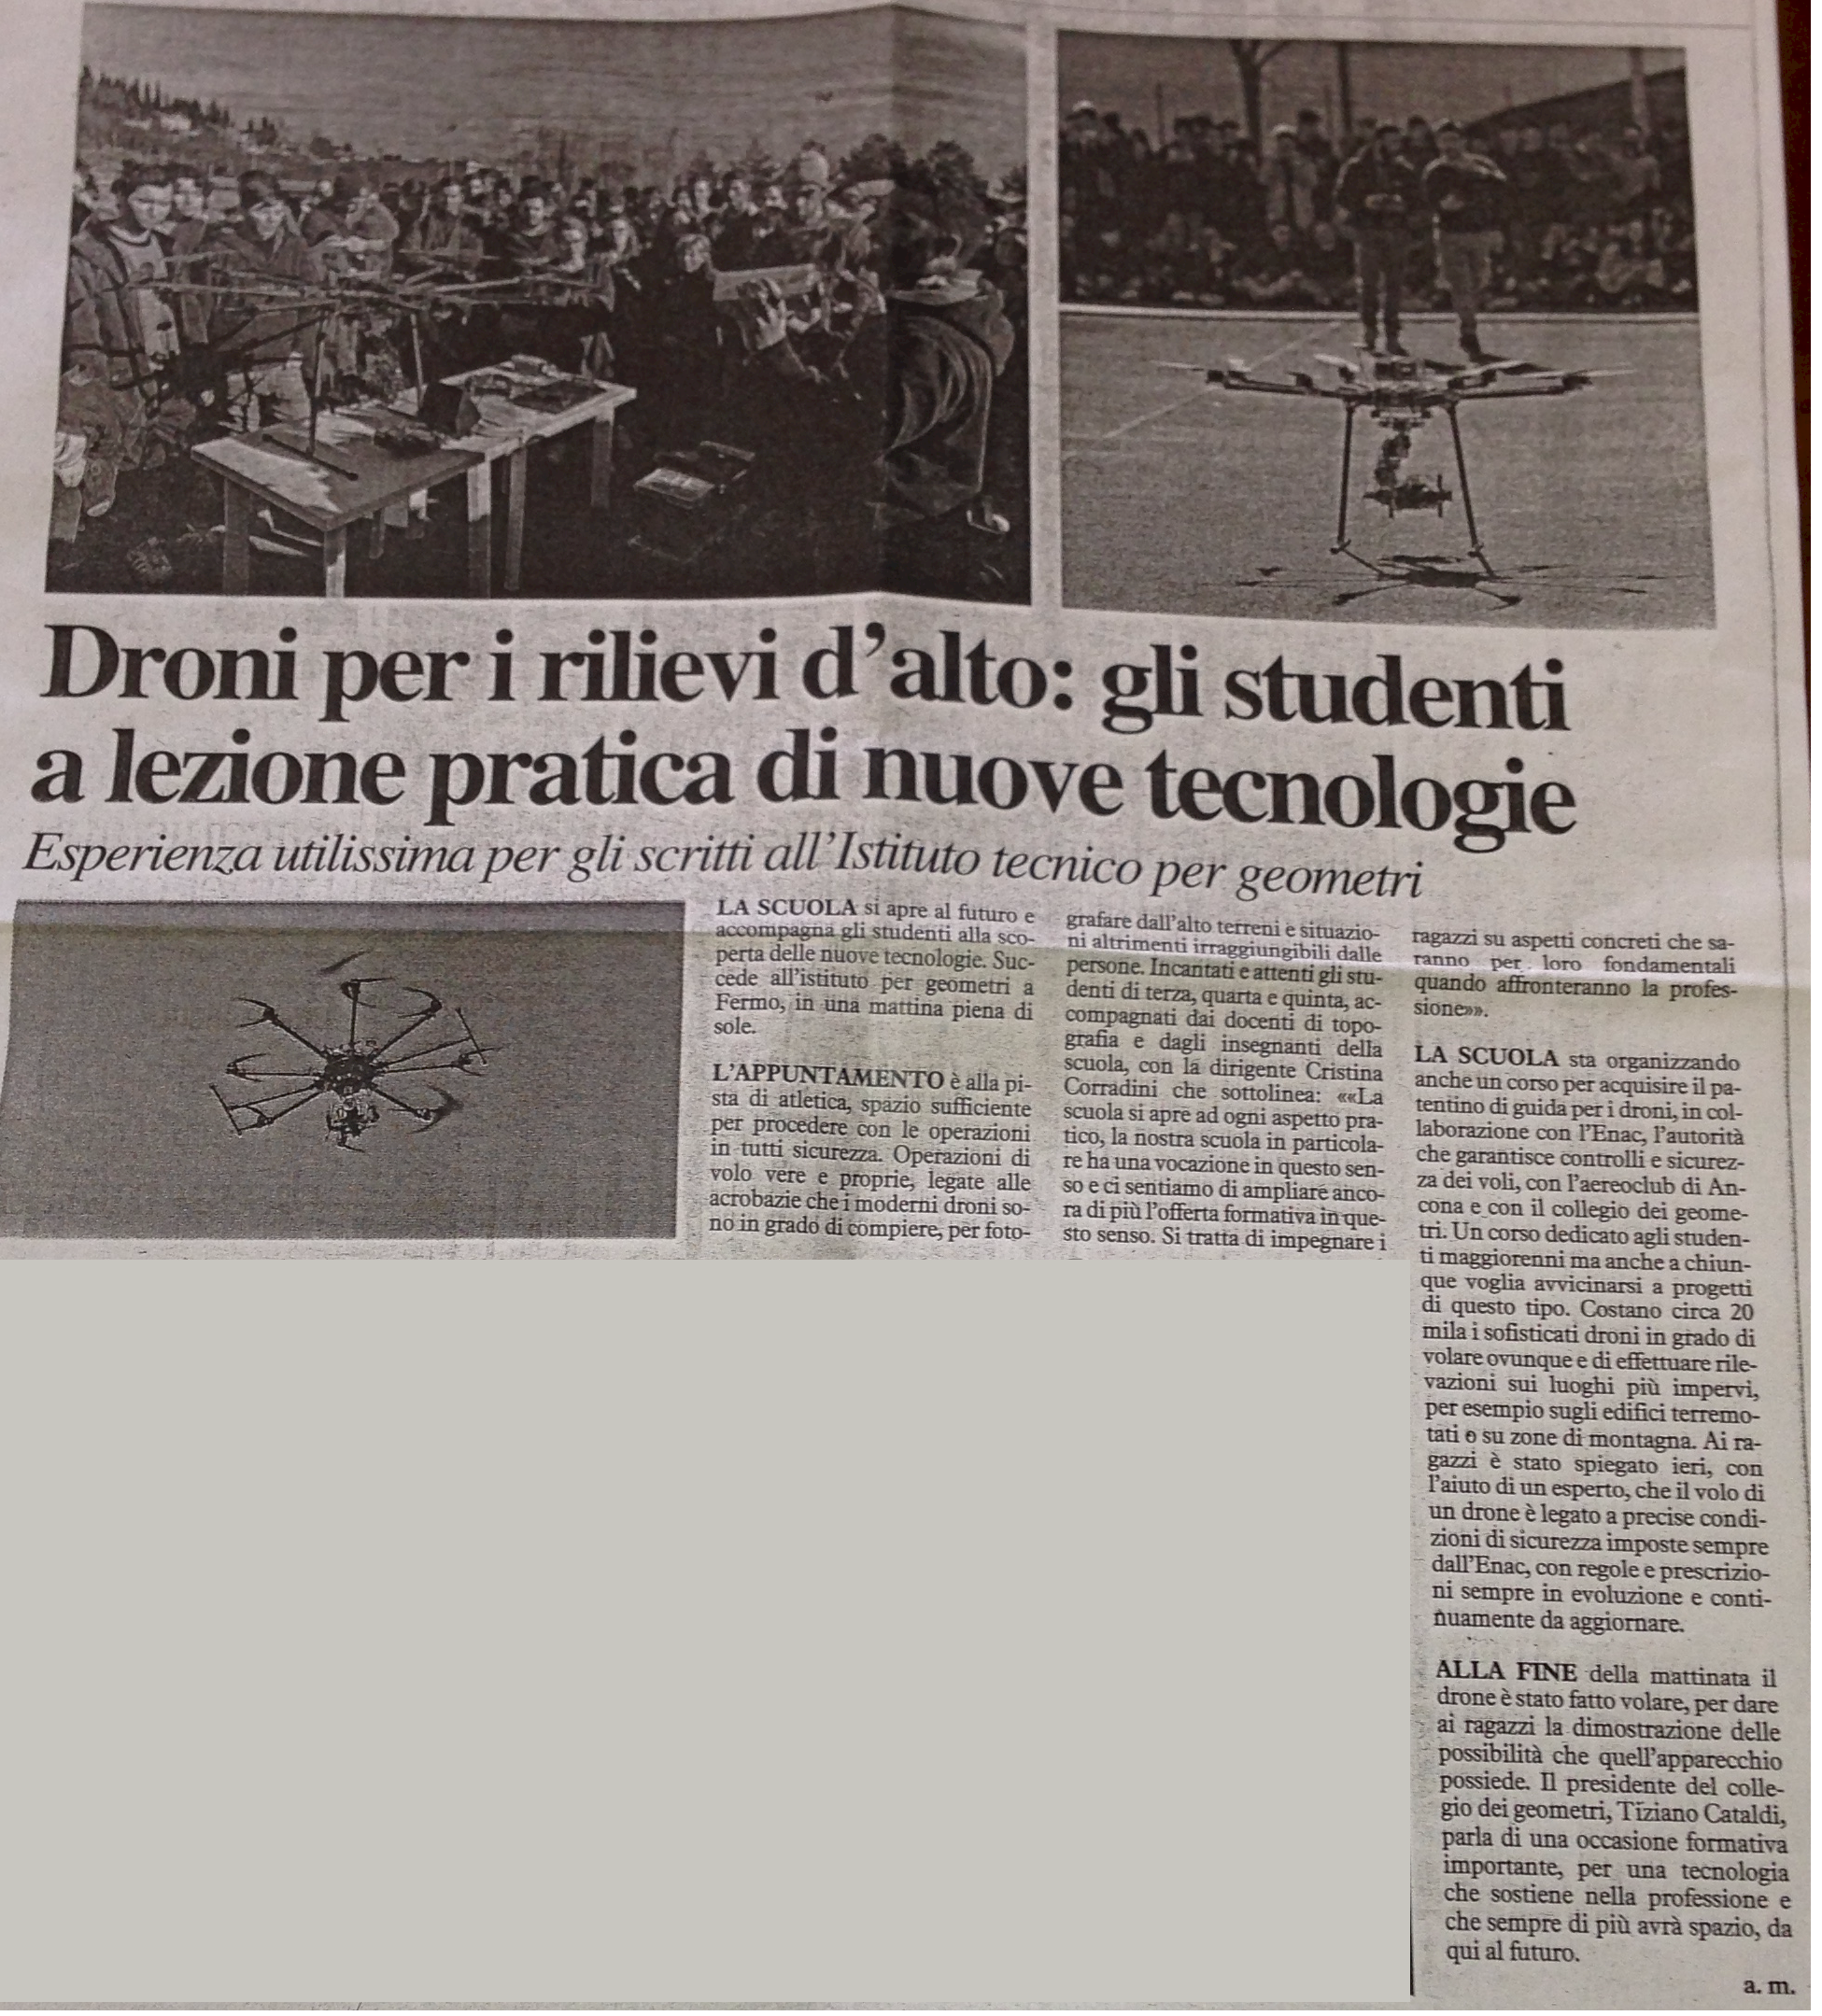 Droni: gli studenti a lezione pratica di nuove tecnologie